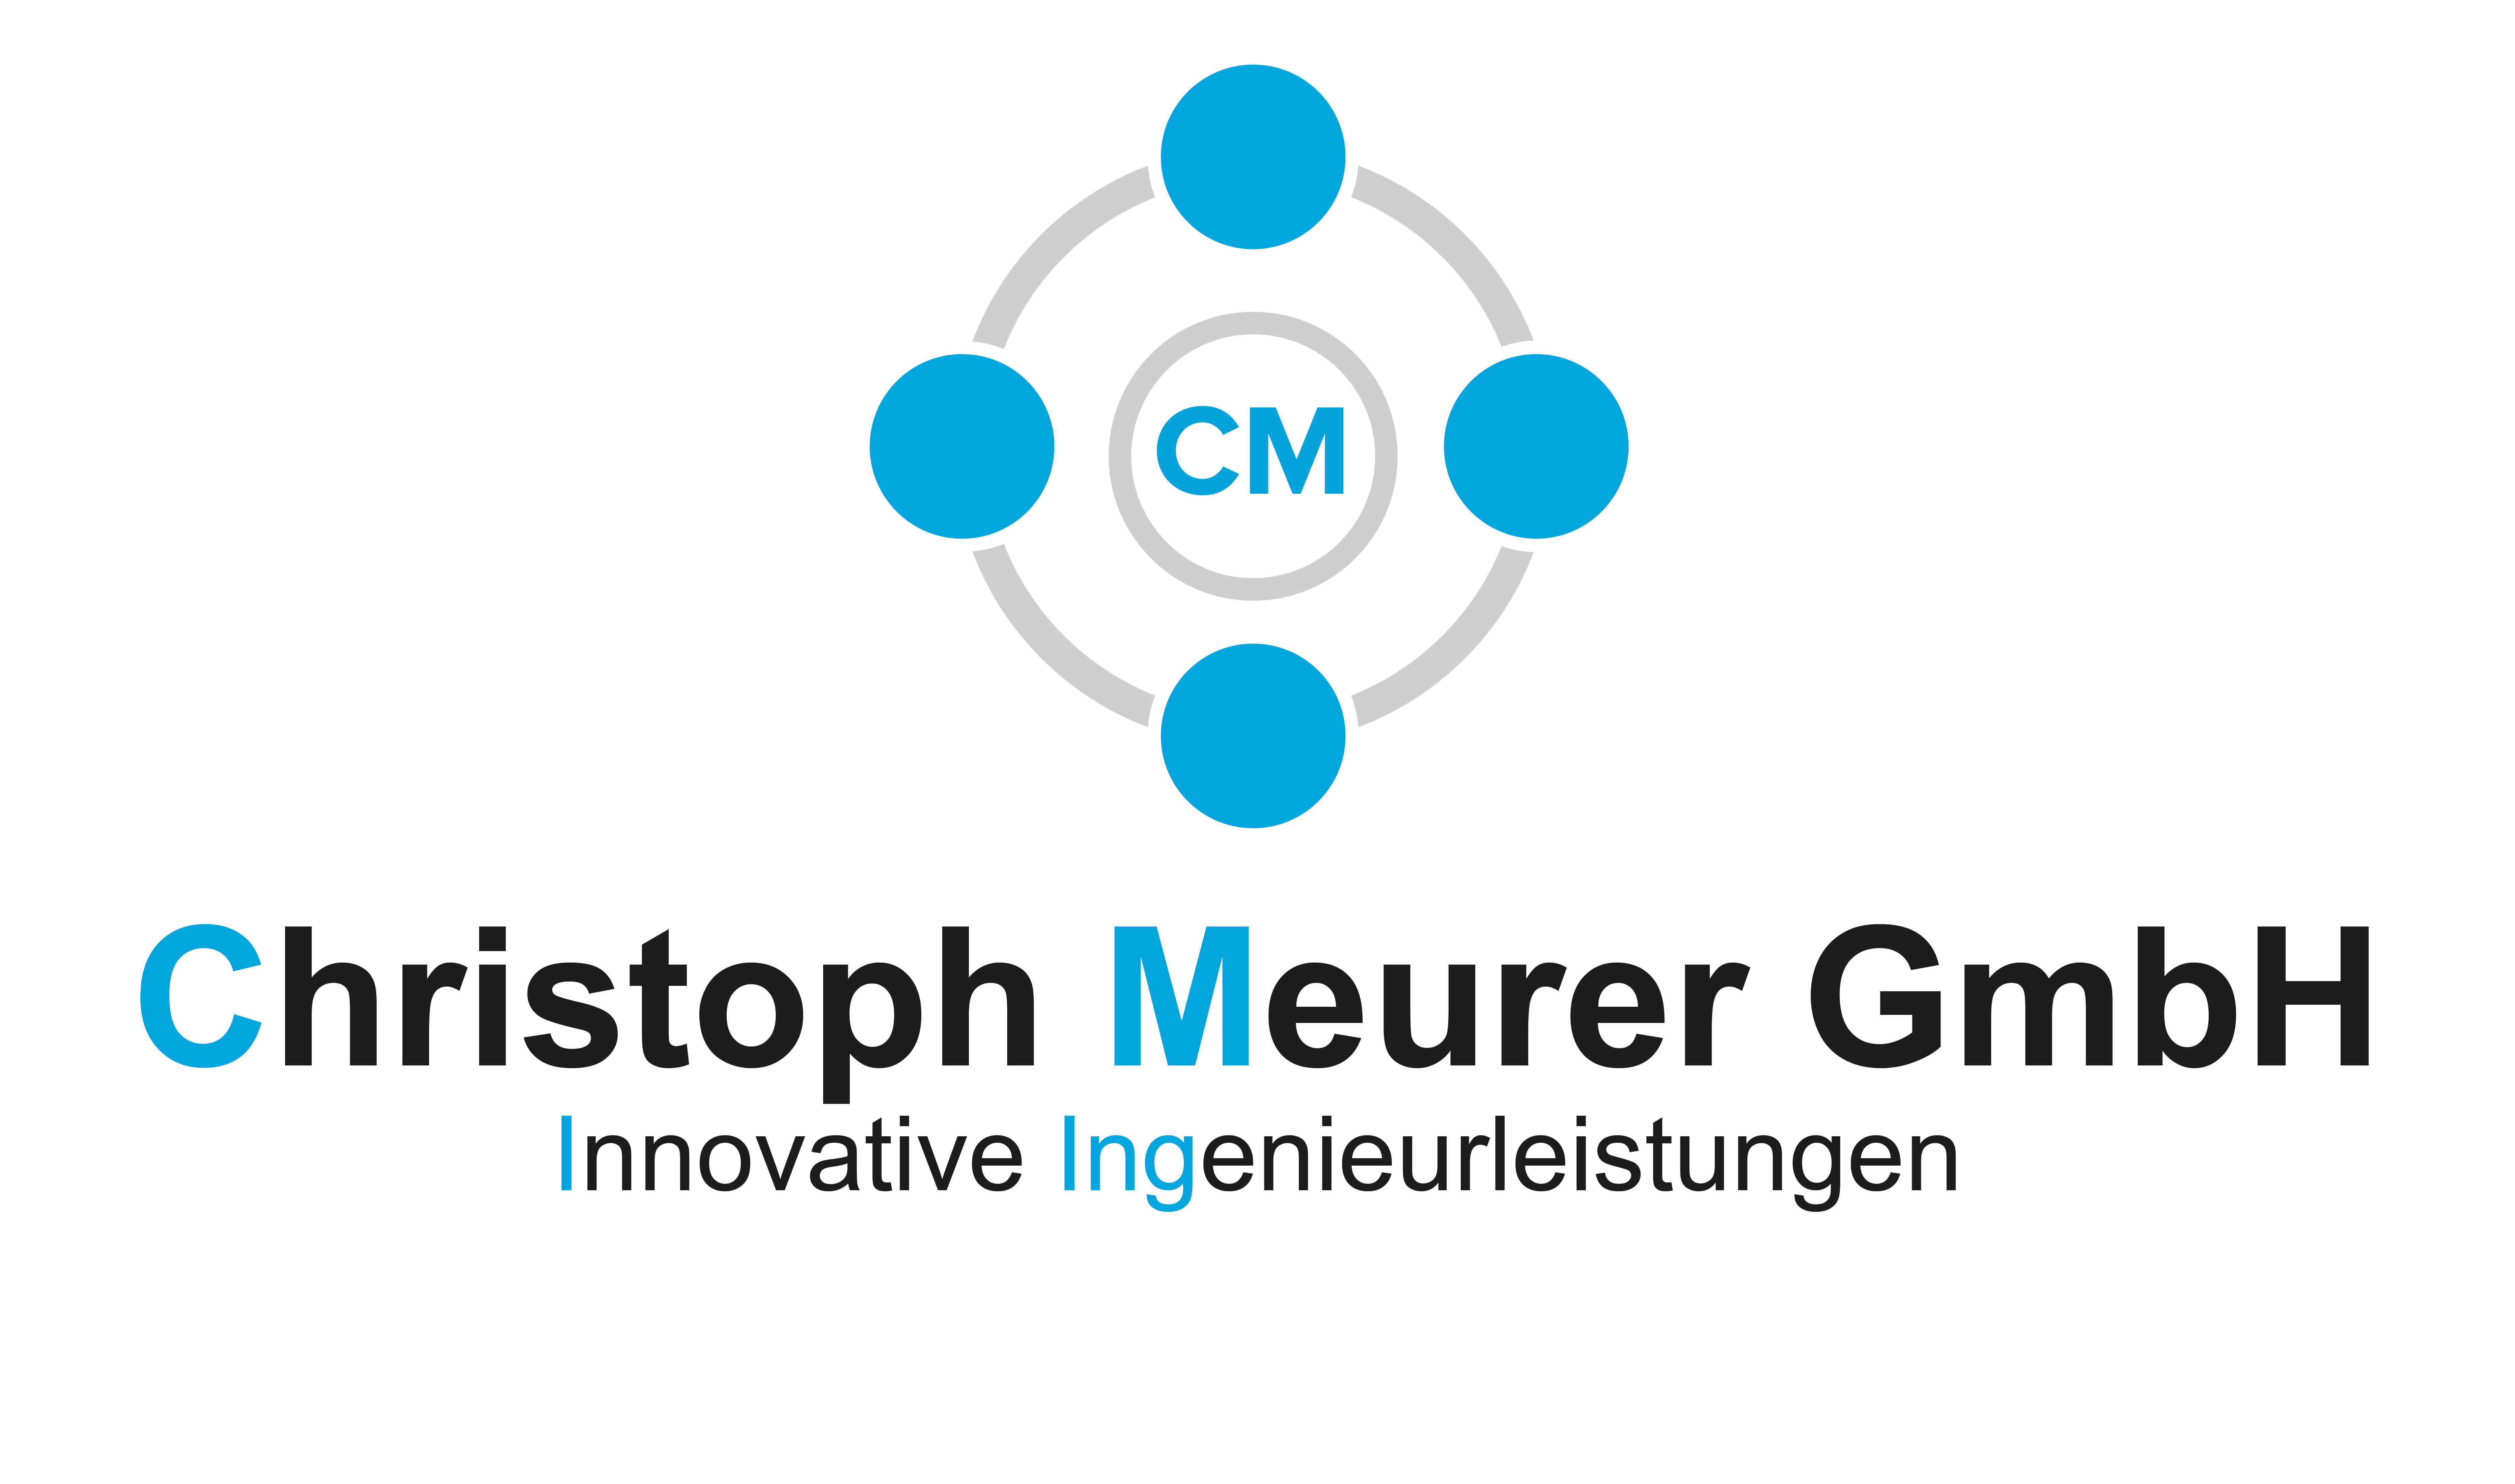 Christoph Meurer GmbH